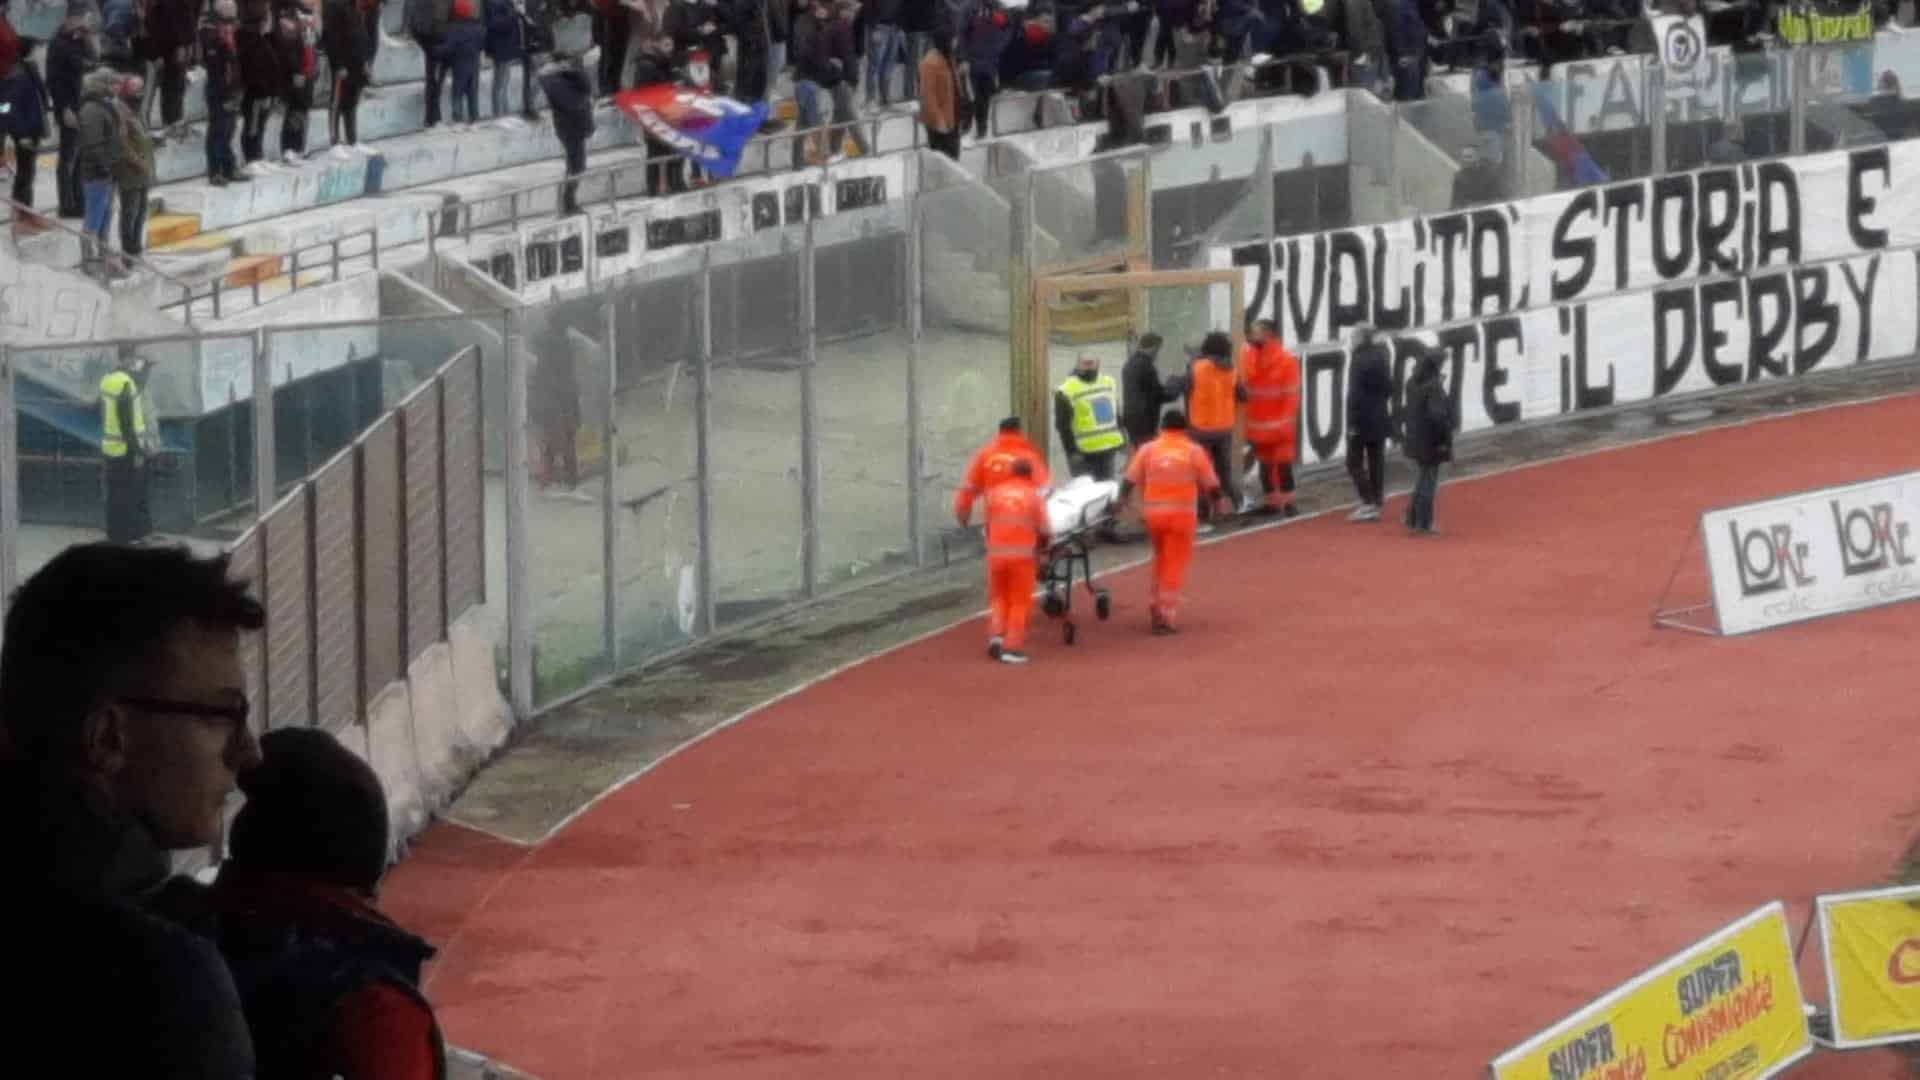 Paura durante Catania-Palermo, tifoso si sente male: gara interrotta per alcuni minuti